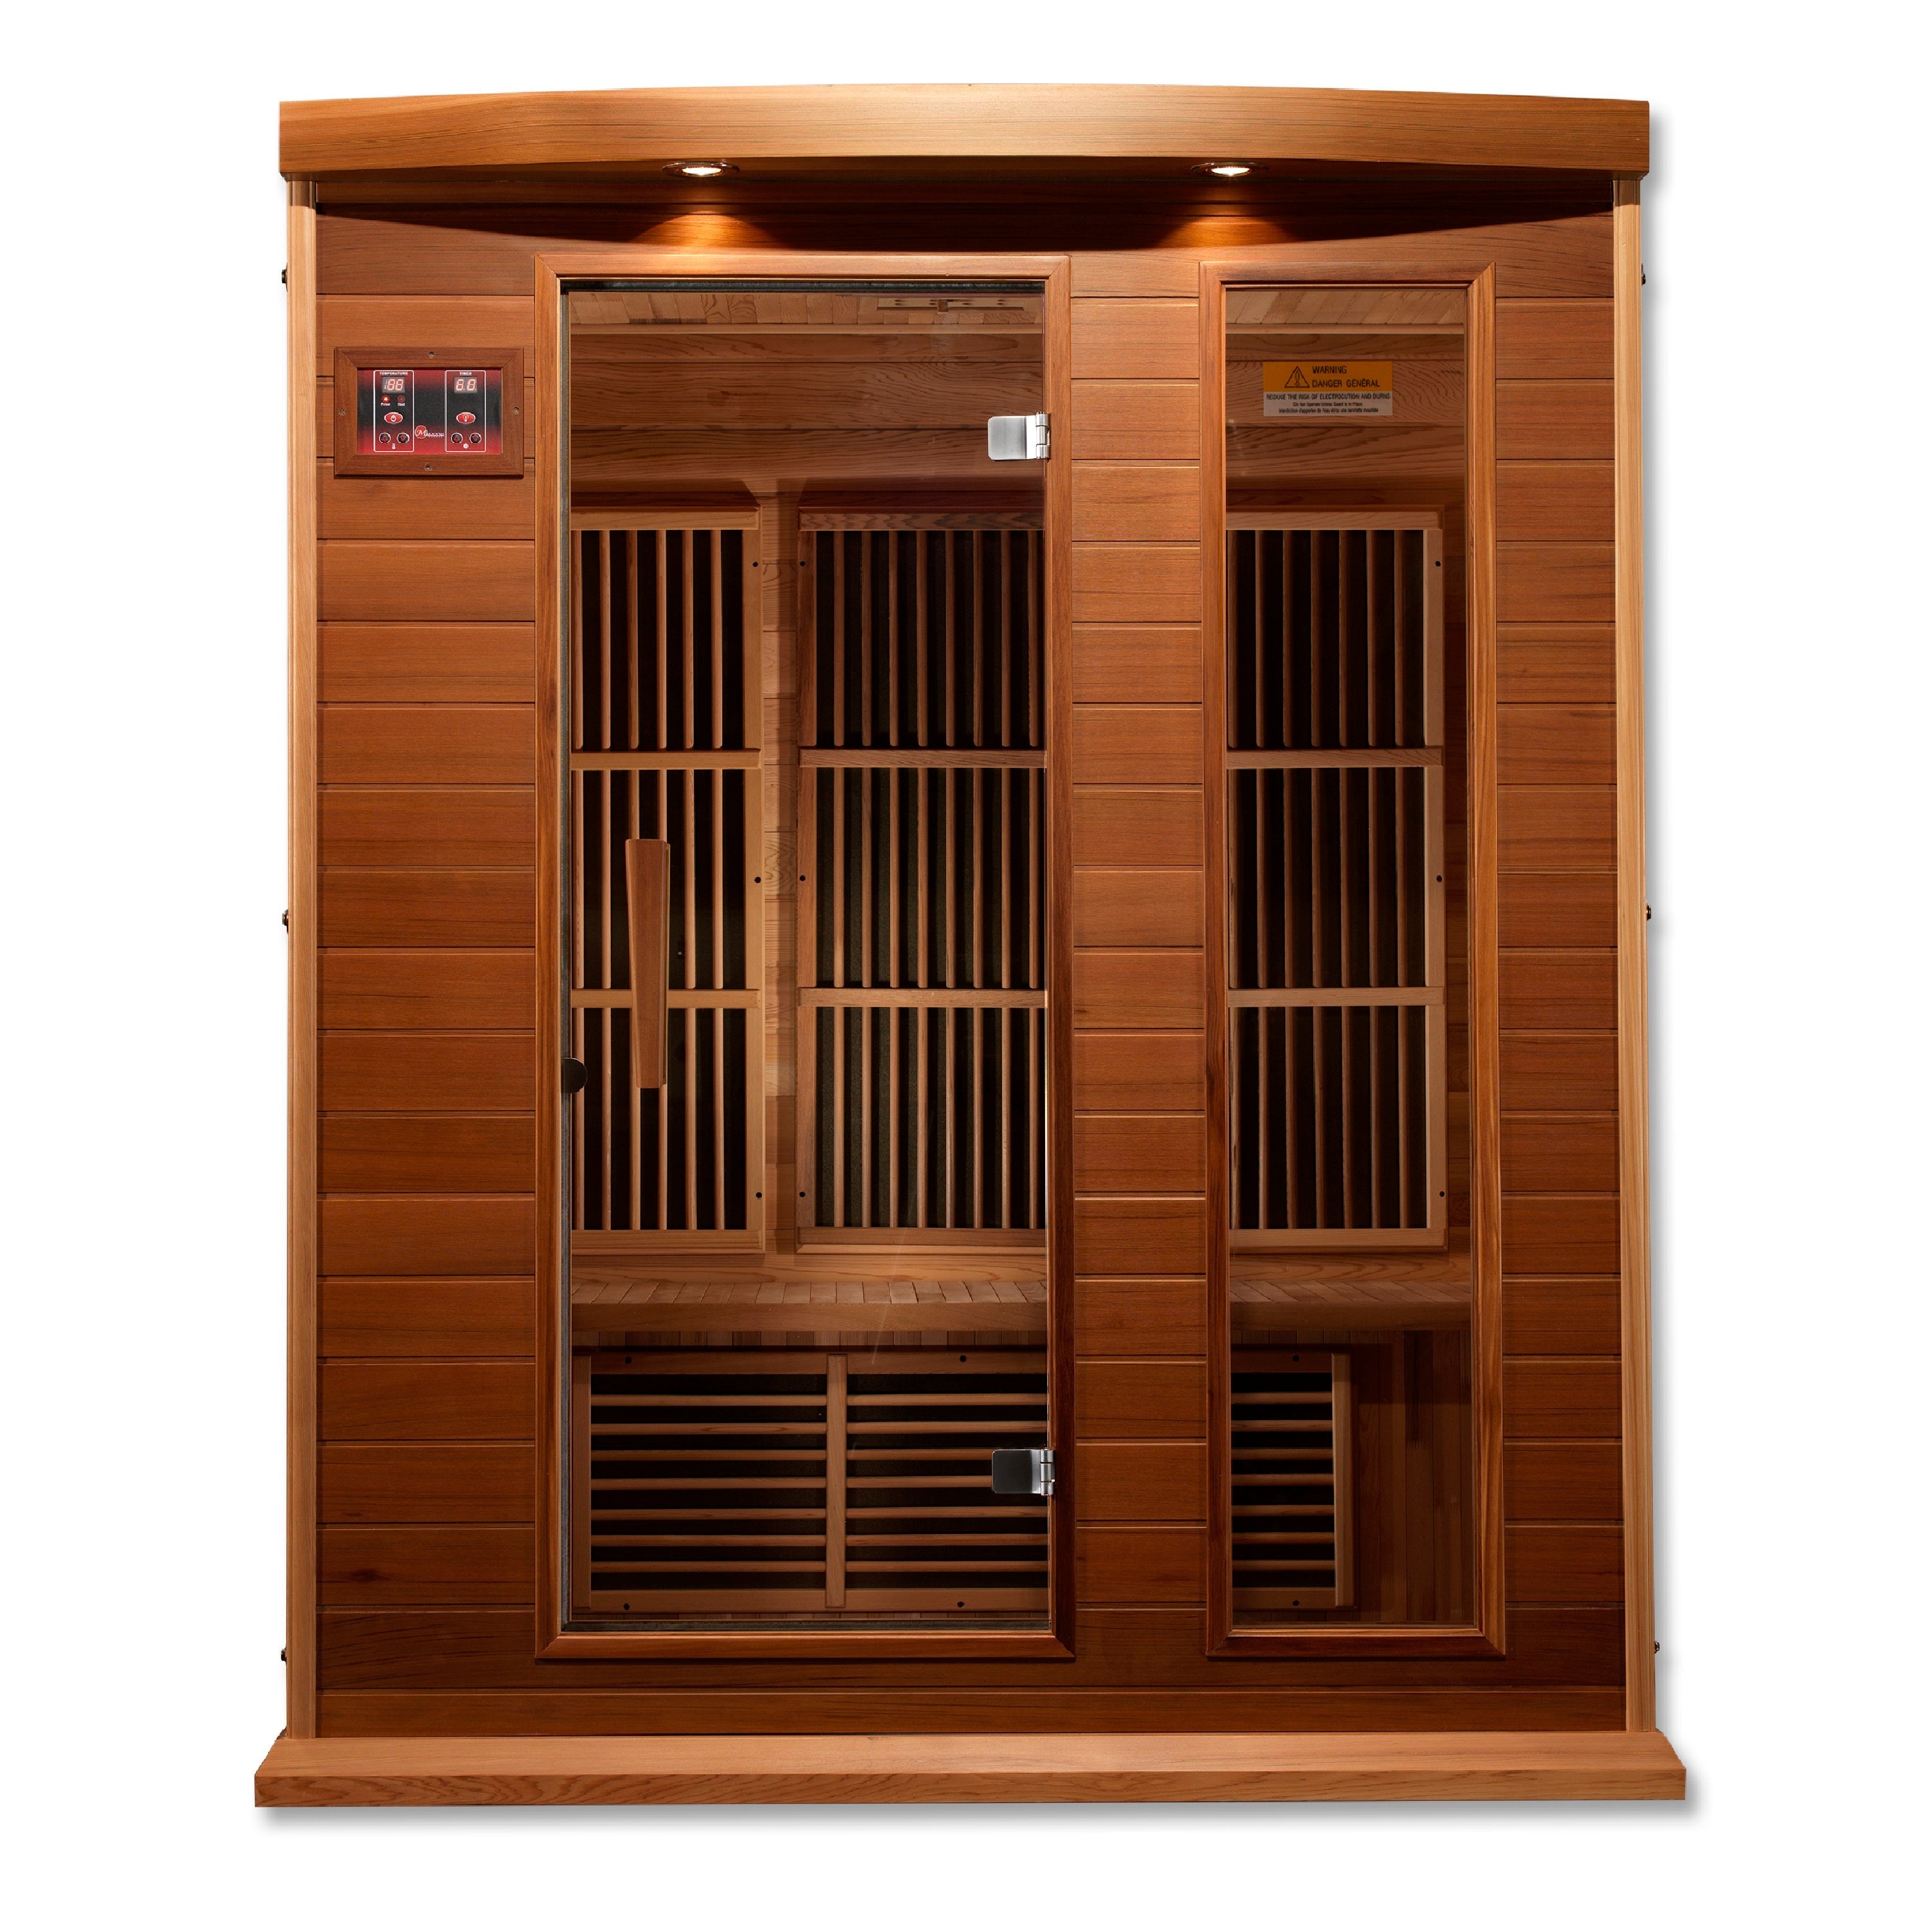 Golden Design Sauna Maxxus 3-Person FAR Infrared Sauna Low EMF w/ Red Cedar - MX-K306-01 CED